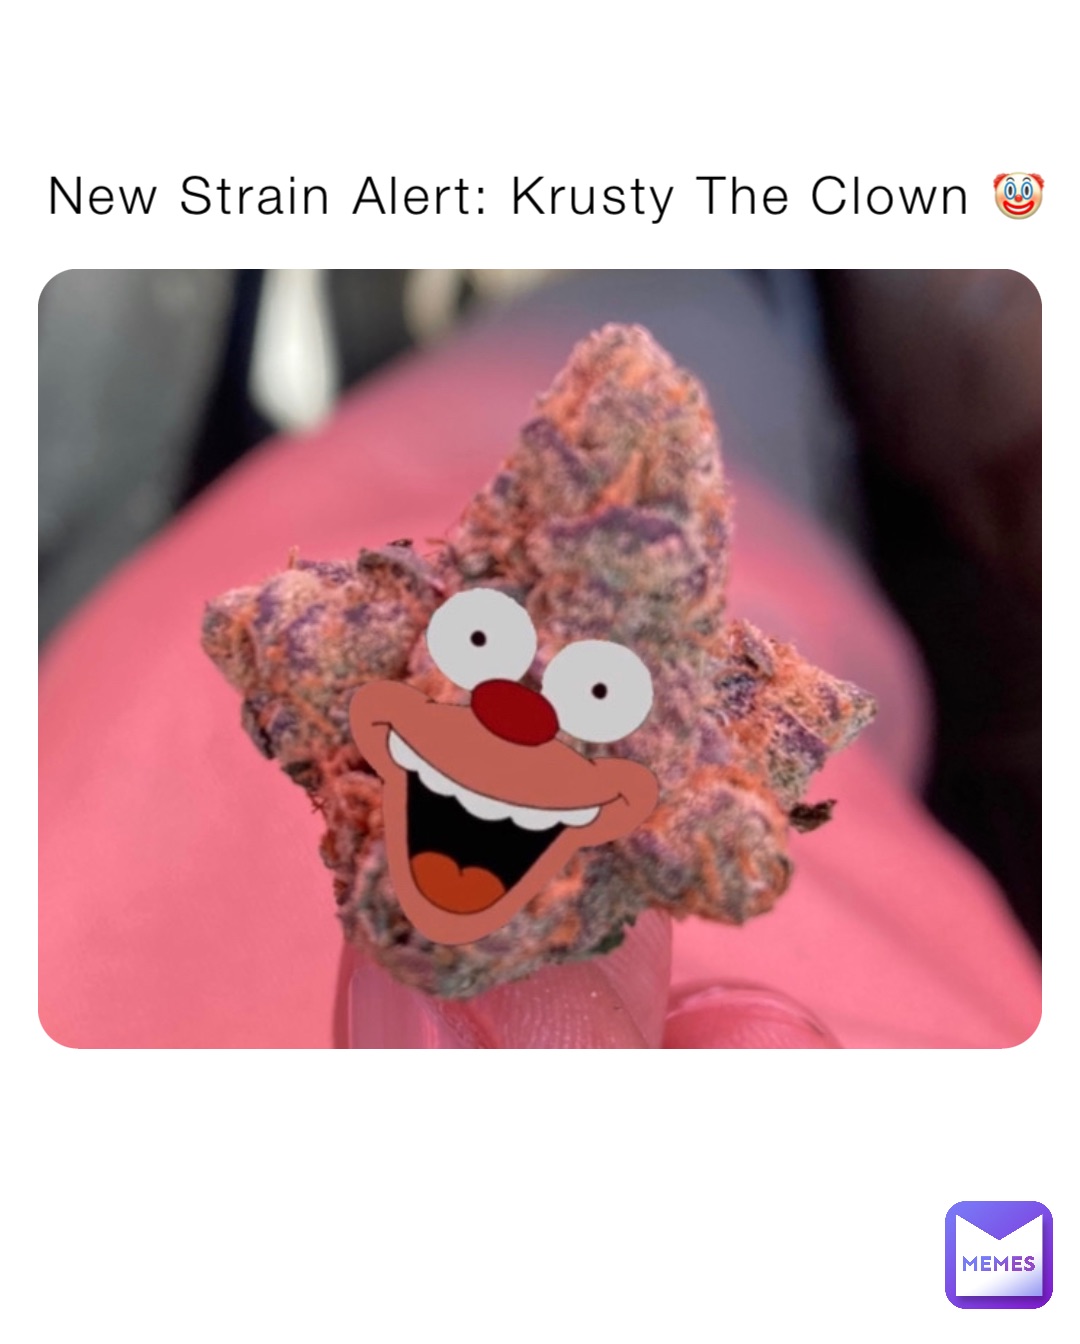 New Strain Alert: Krusty The Clown 🤡